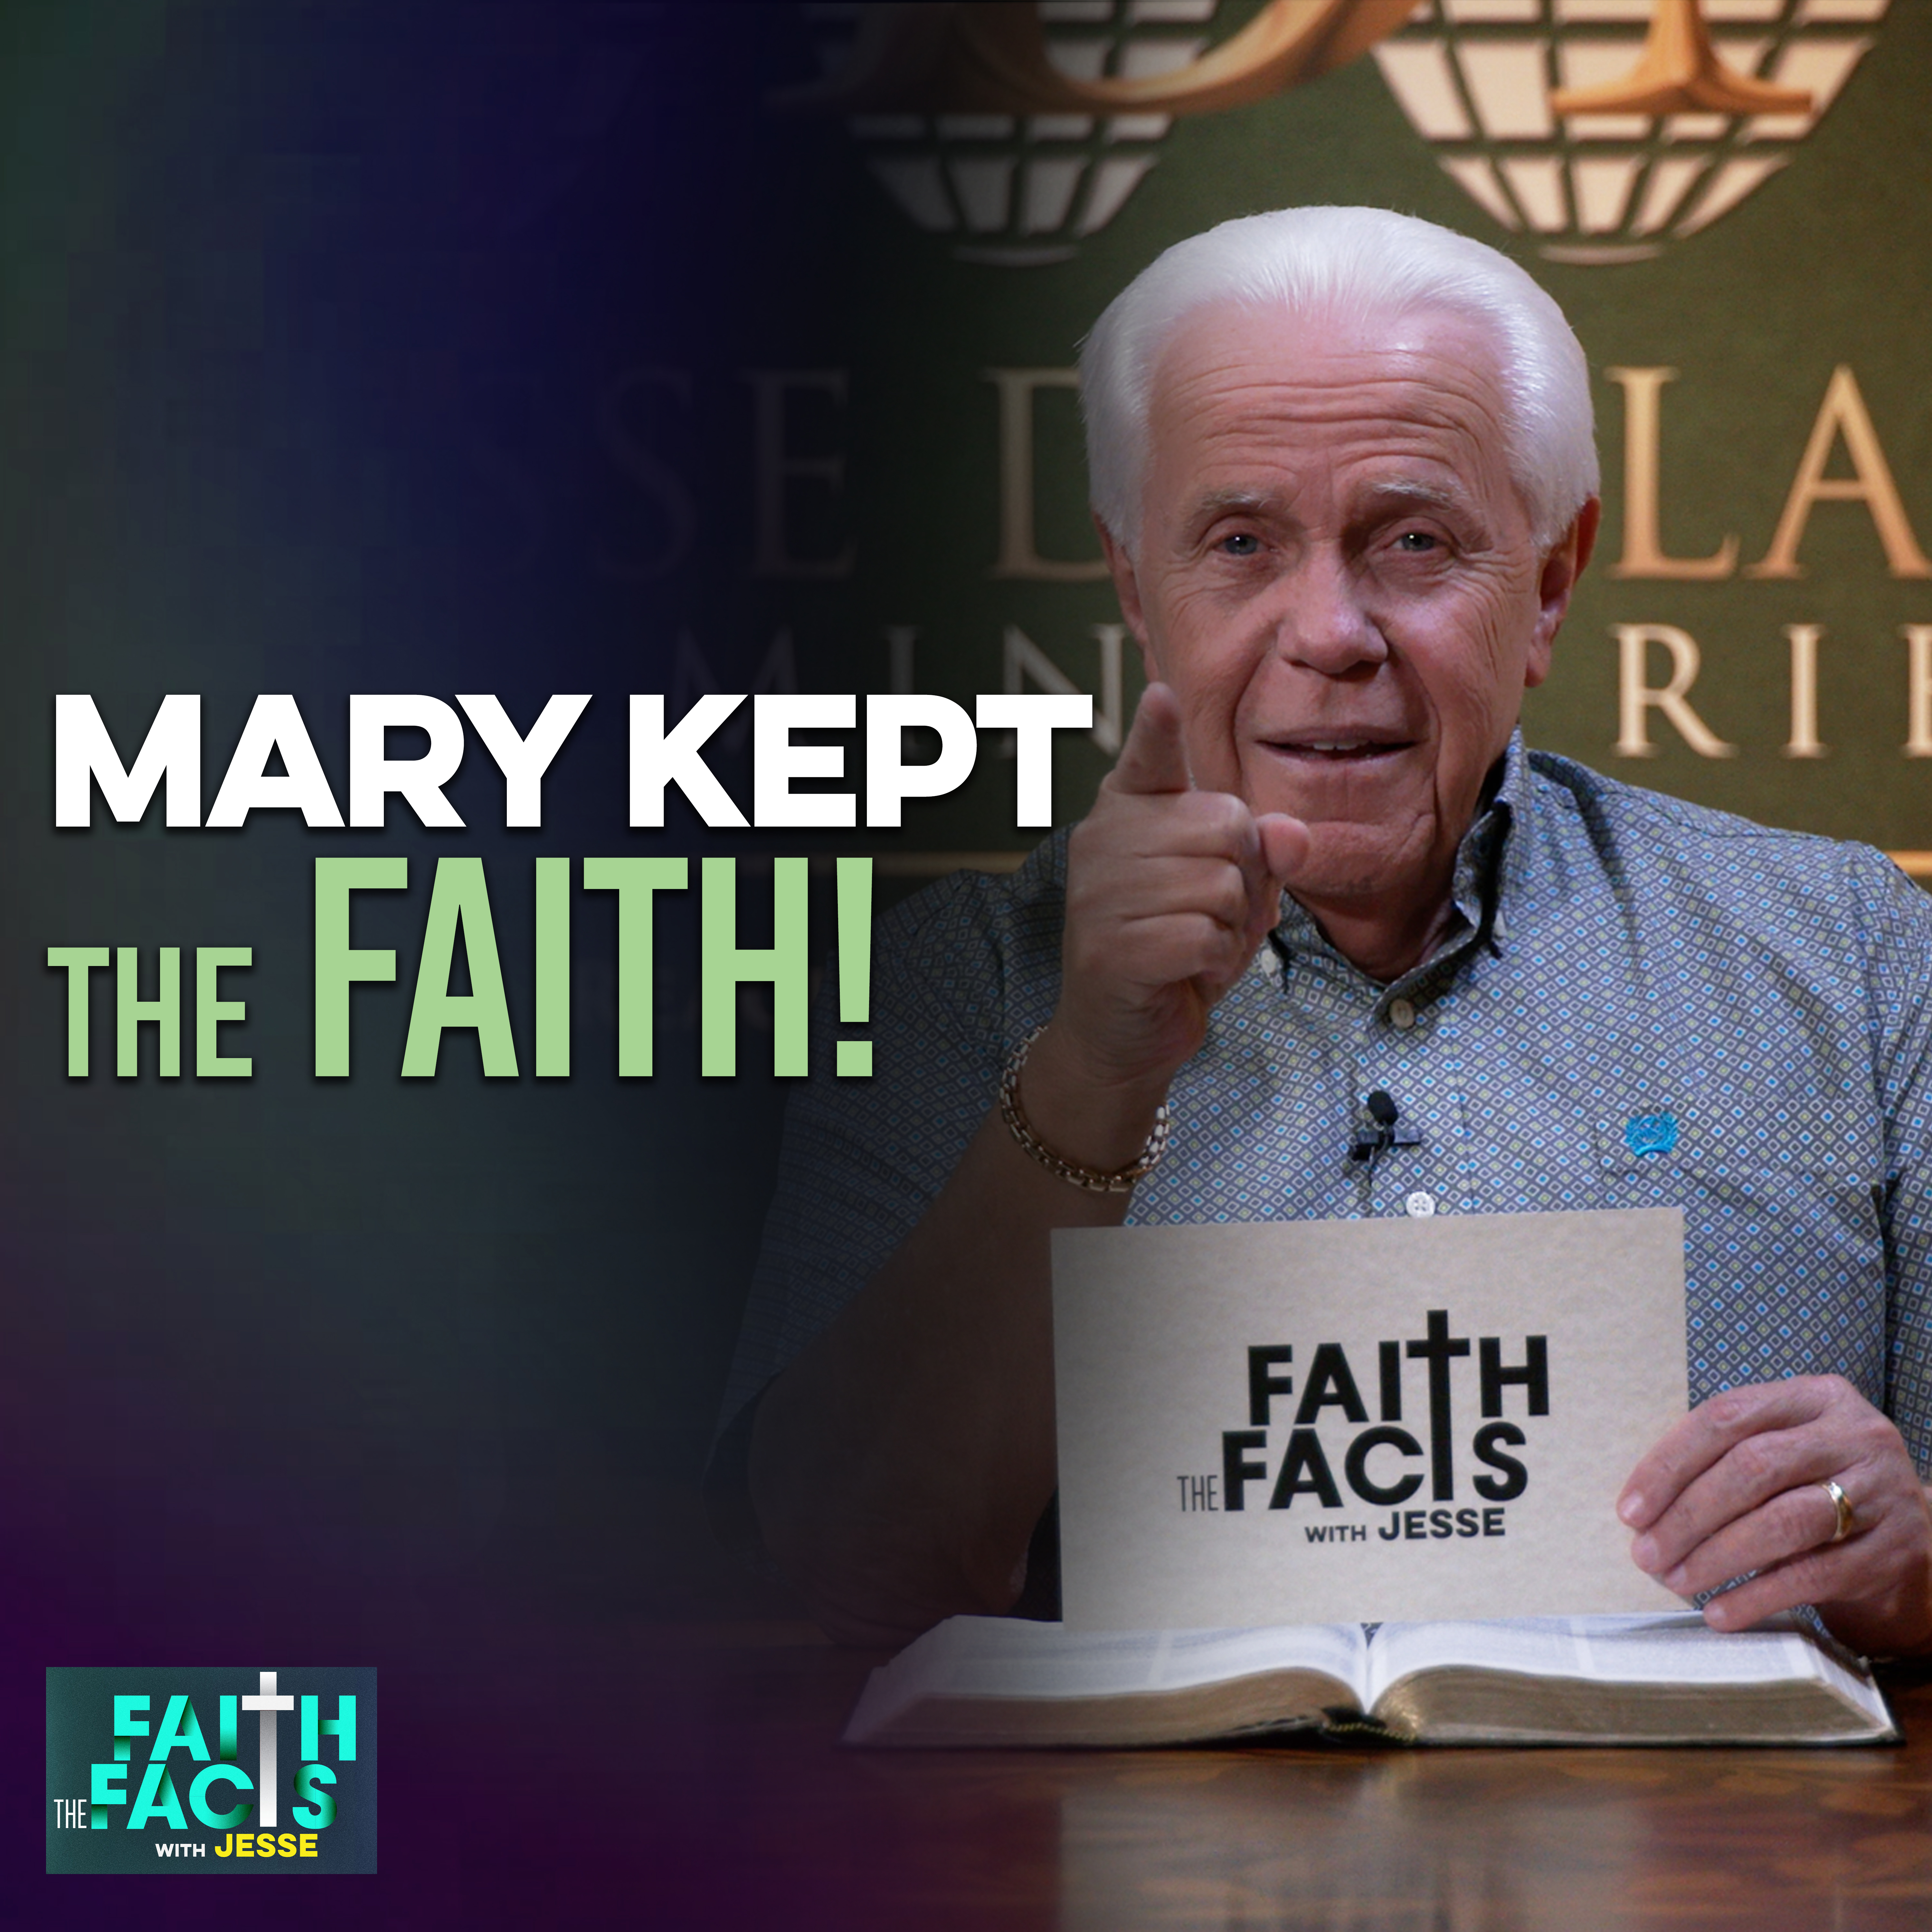 Mary Kept The Faith!